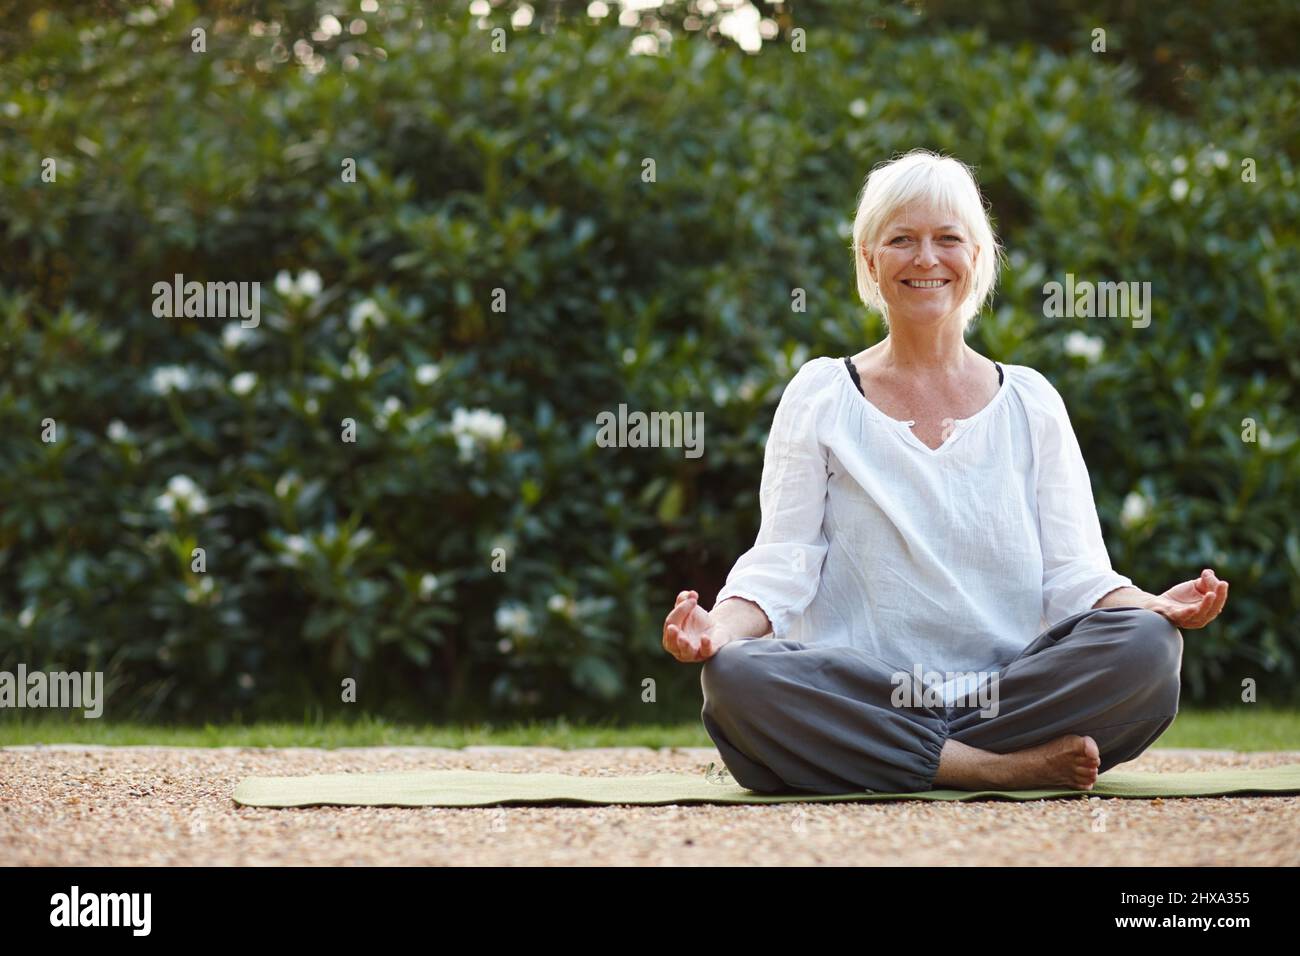 Faire ses exercices de pleine conscience en plein air. Portrait d'une femme mûre attrayante assise dans la position de lotus à l'extérieur. Banque D'Images